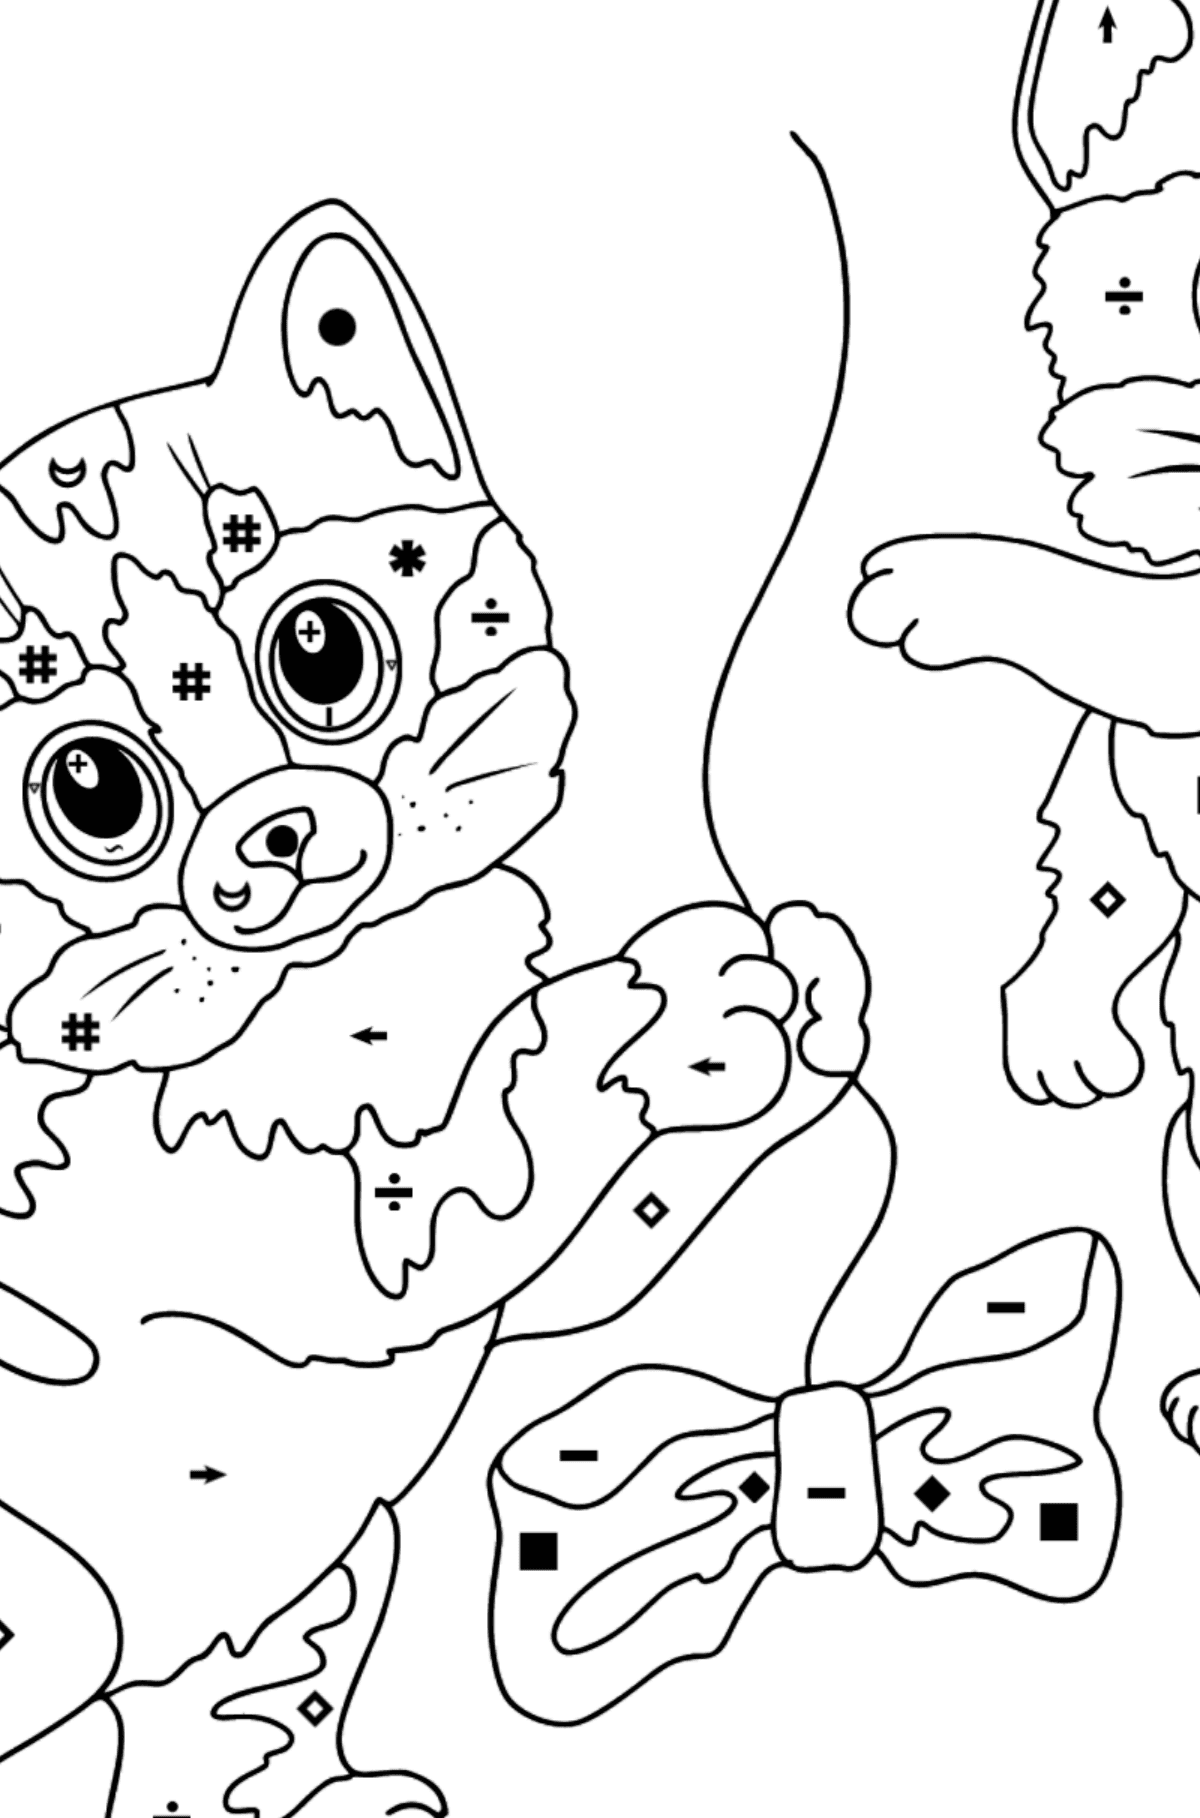 Tegning til fargelegging fine kattunger (vanskelig) - Fargelegge etter symboler for barn